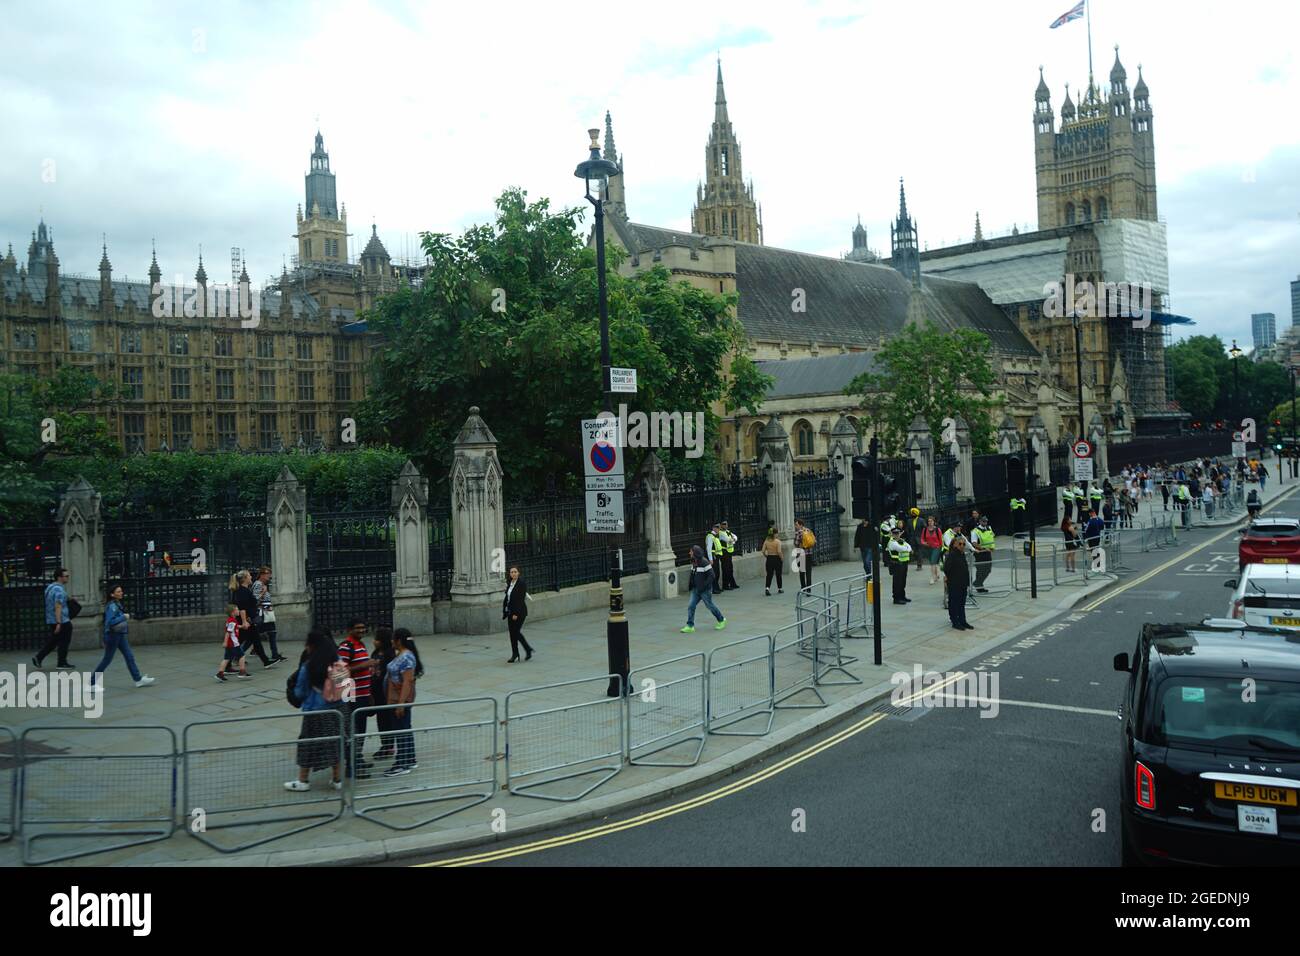 Vue panoramique sur le palais de Westminster à Parliament Square à Westminster, Londres, Angleterre, Royaume-Uni Banque D'Images